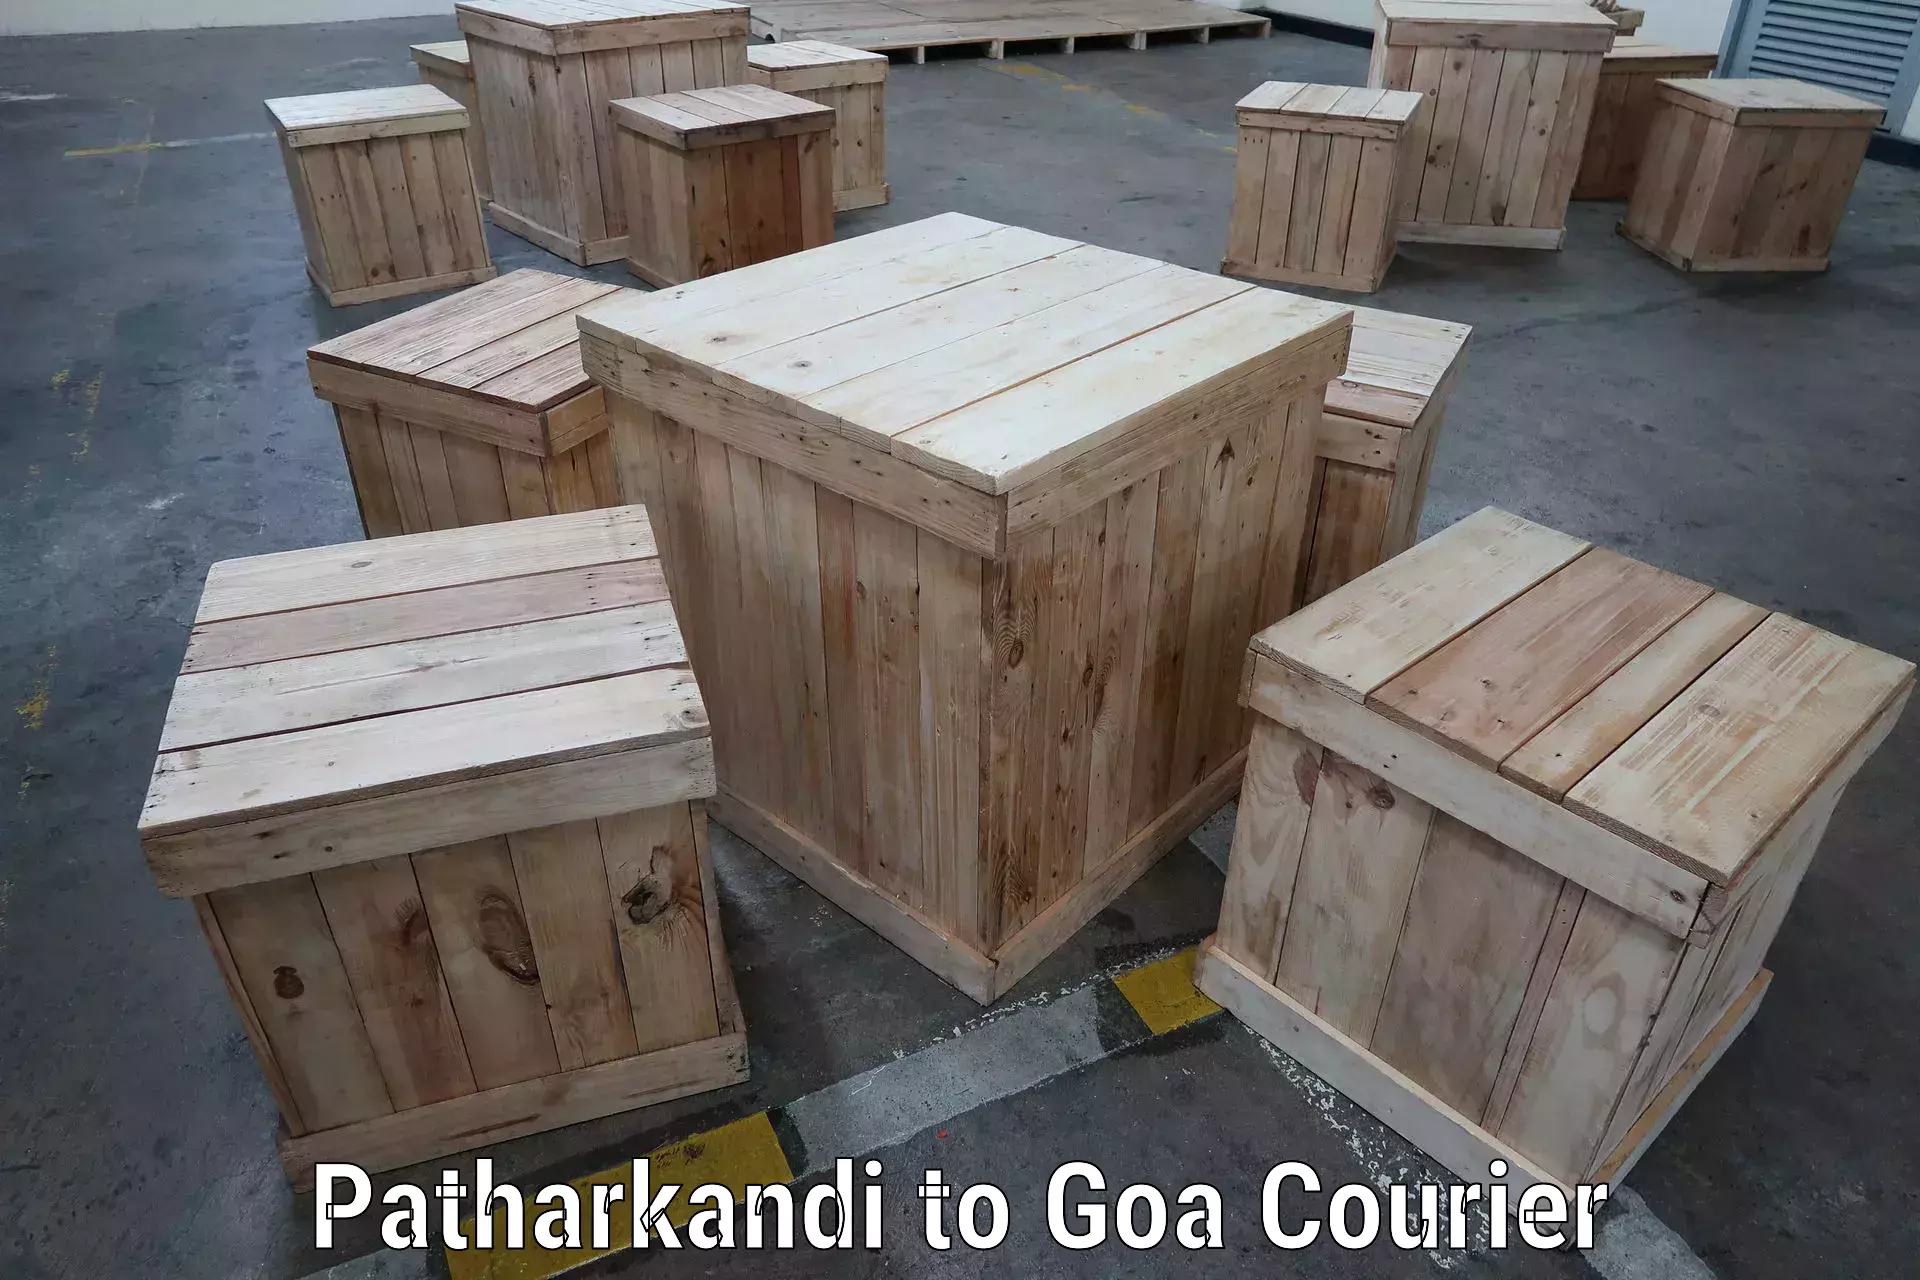 Seamless shipping service Patharkandi to IIT Goa